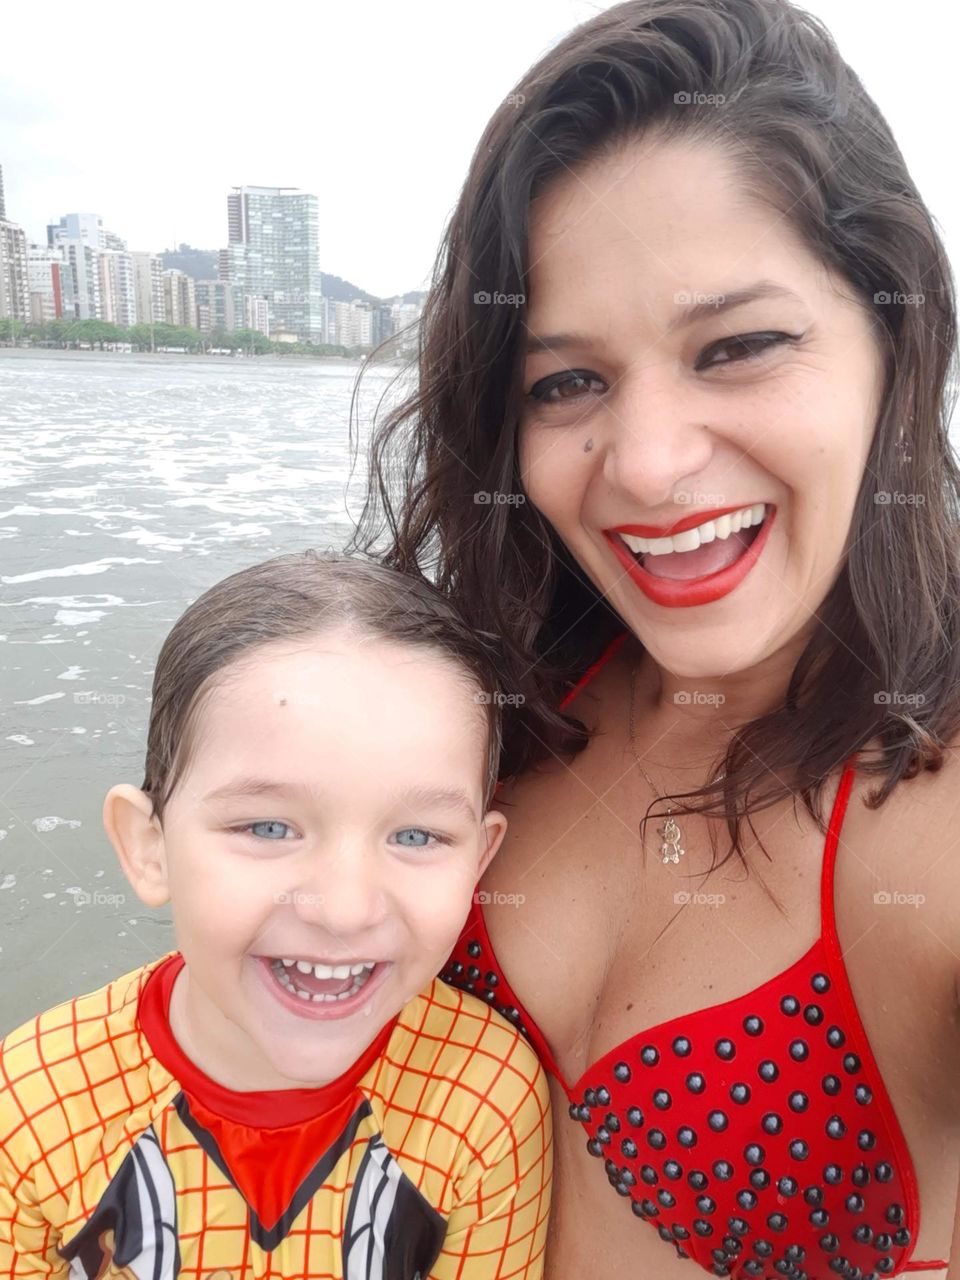 joy on the beach in Santos